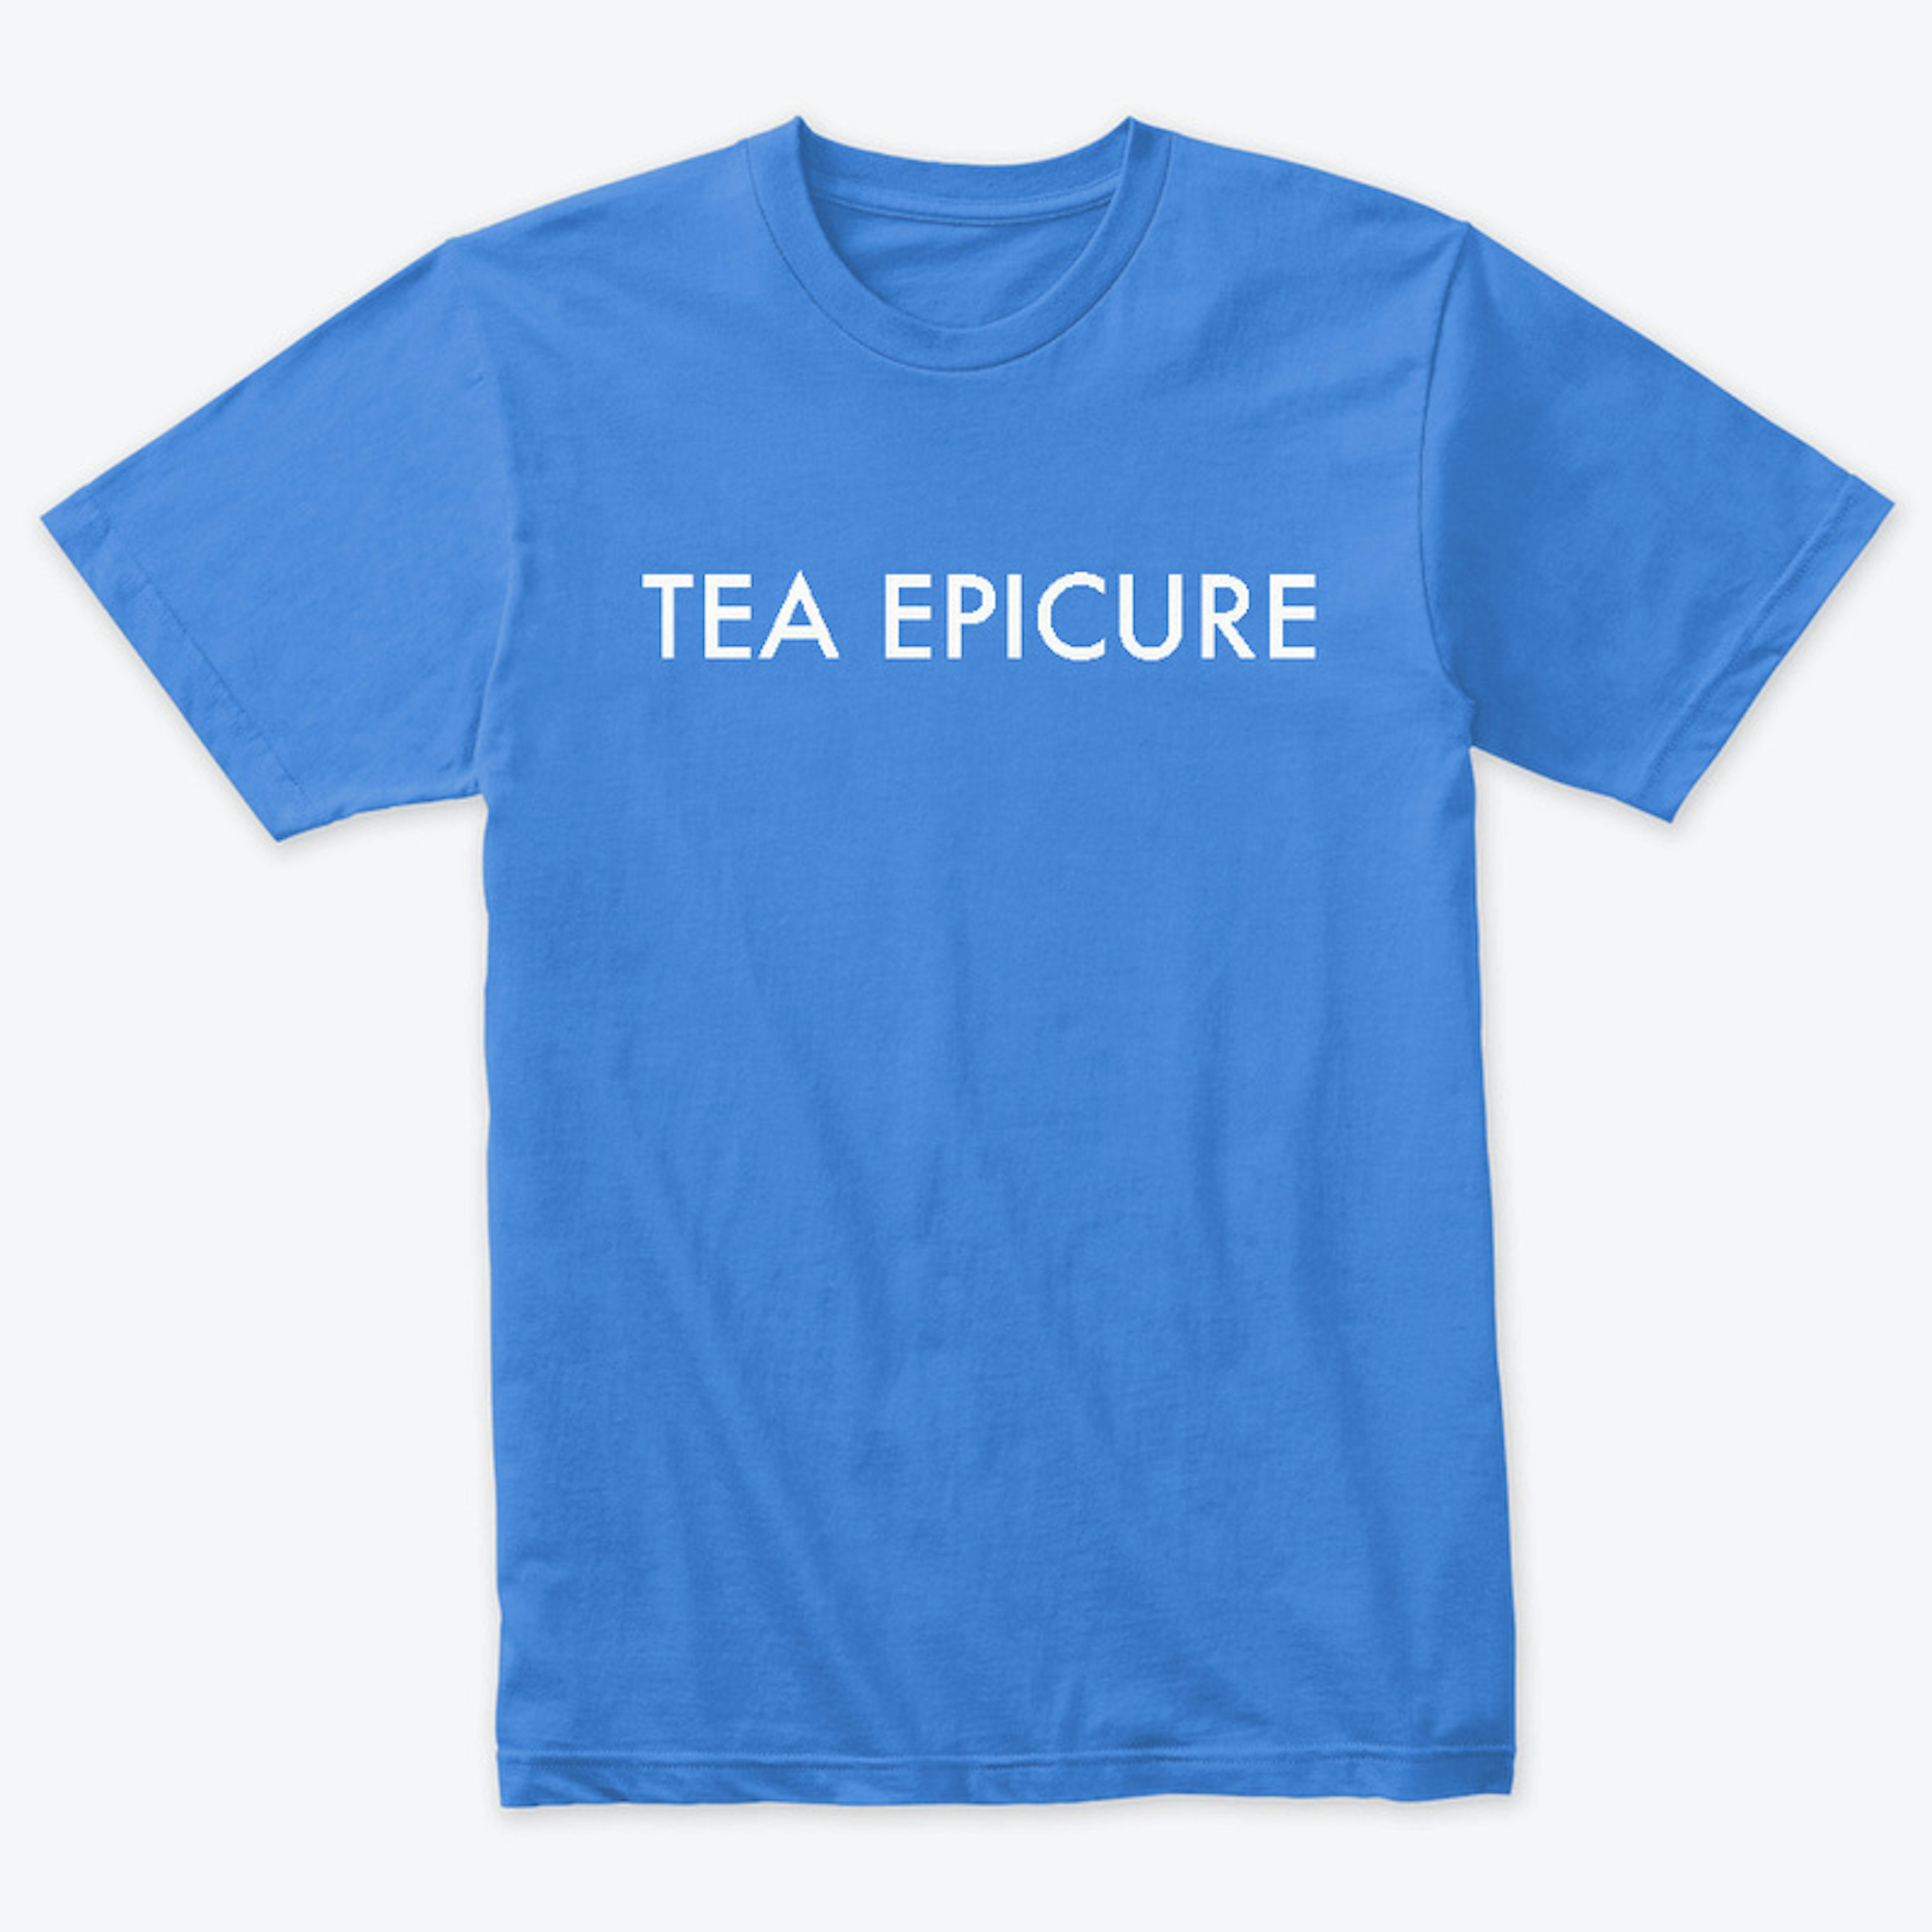 Tea Epicure